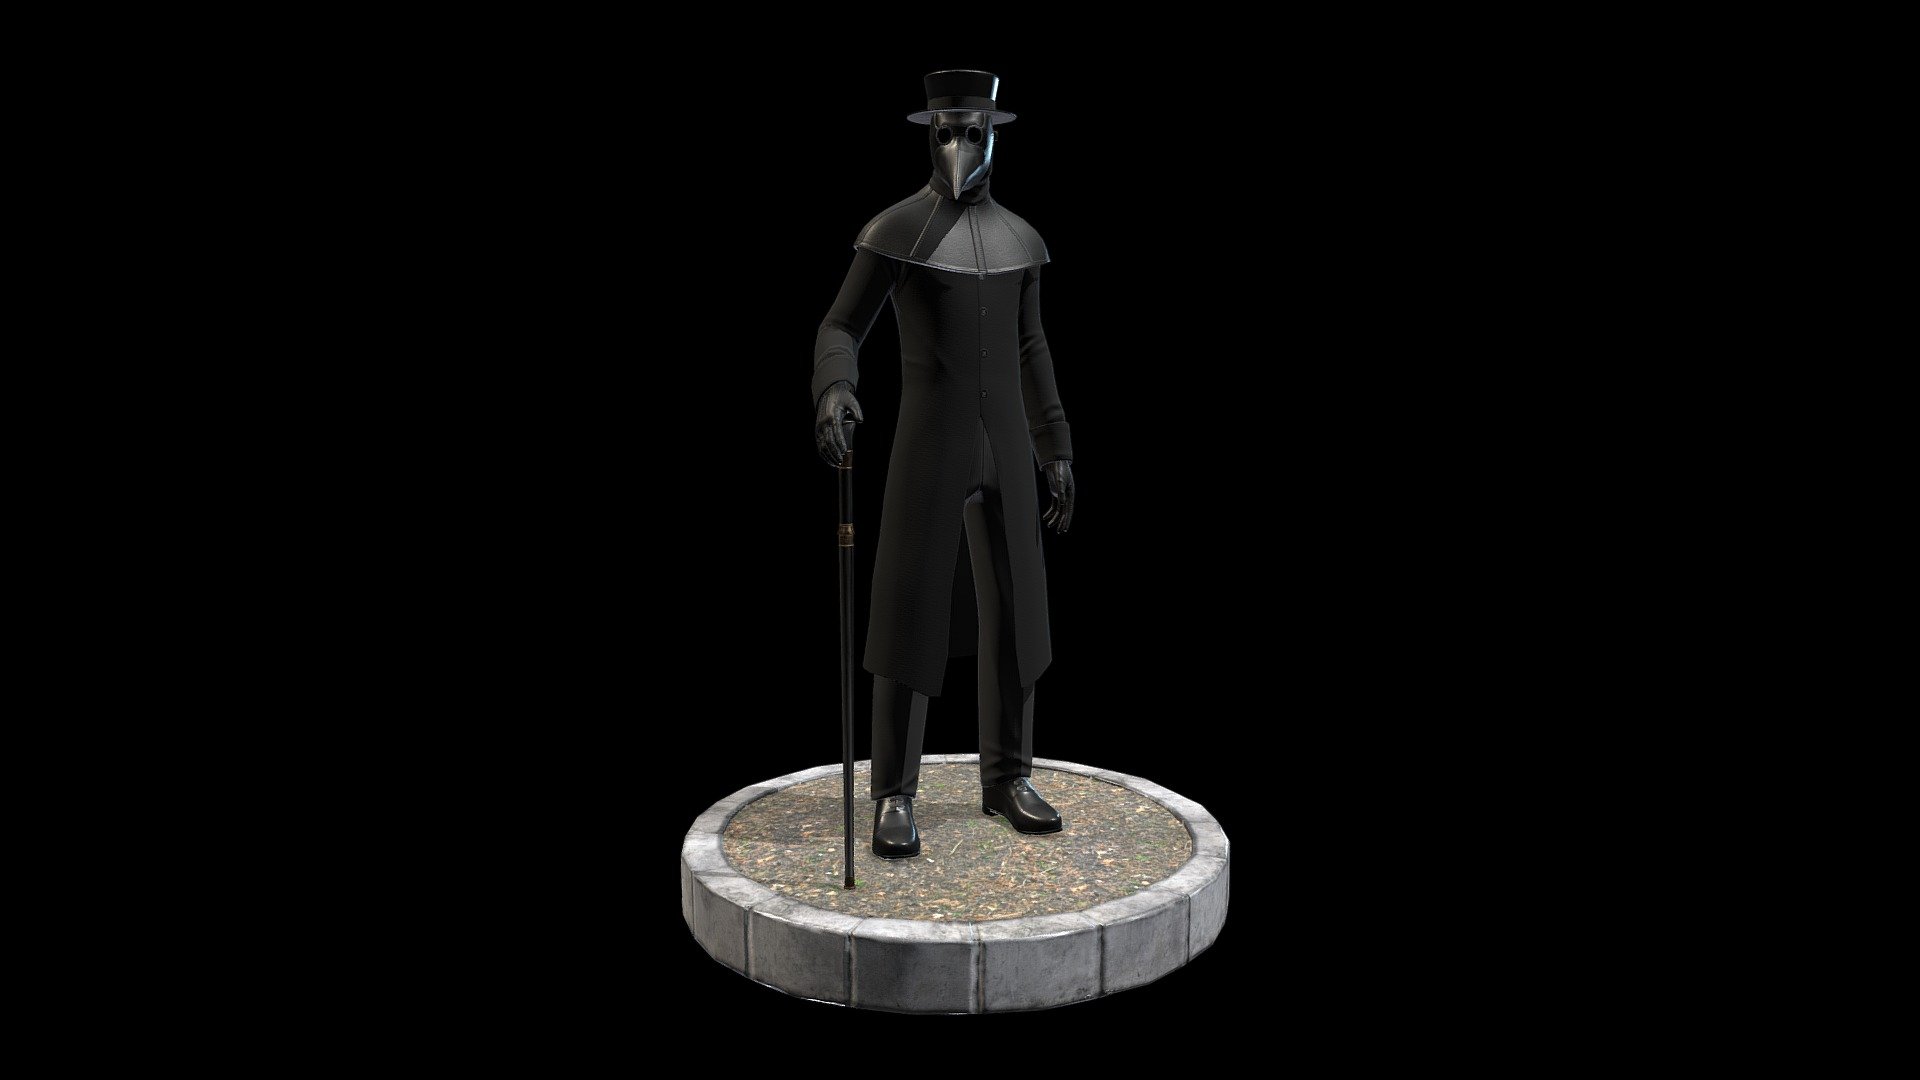 Black plague doctor made in blender

Medico de la peste hecho en blender - Plague Doctor - 3D model by FedeOde 3d model